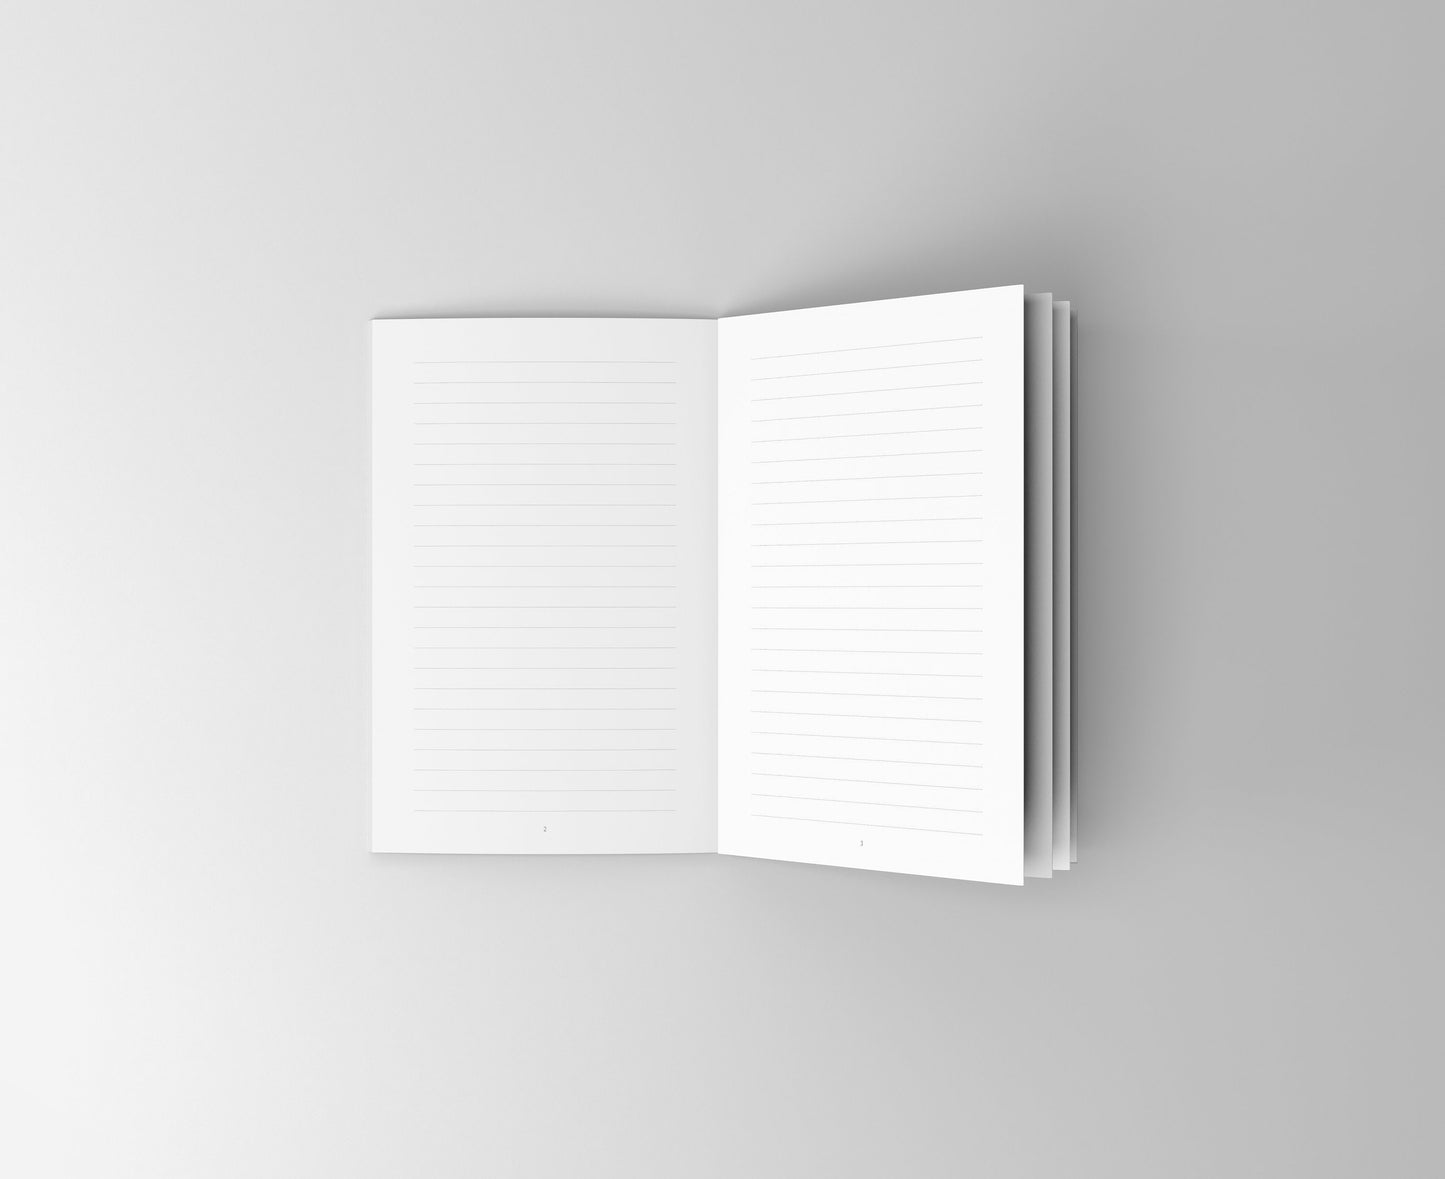 Notizbuch Australien | Inspirierende Sprüche | 13x20 cm